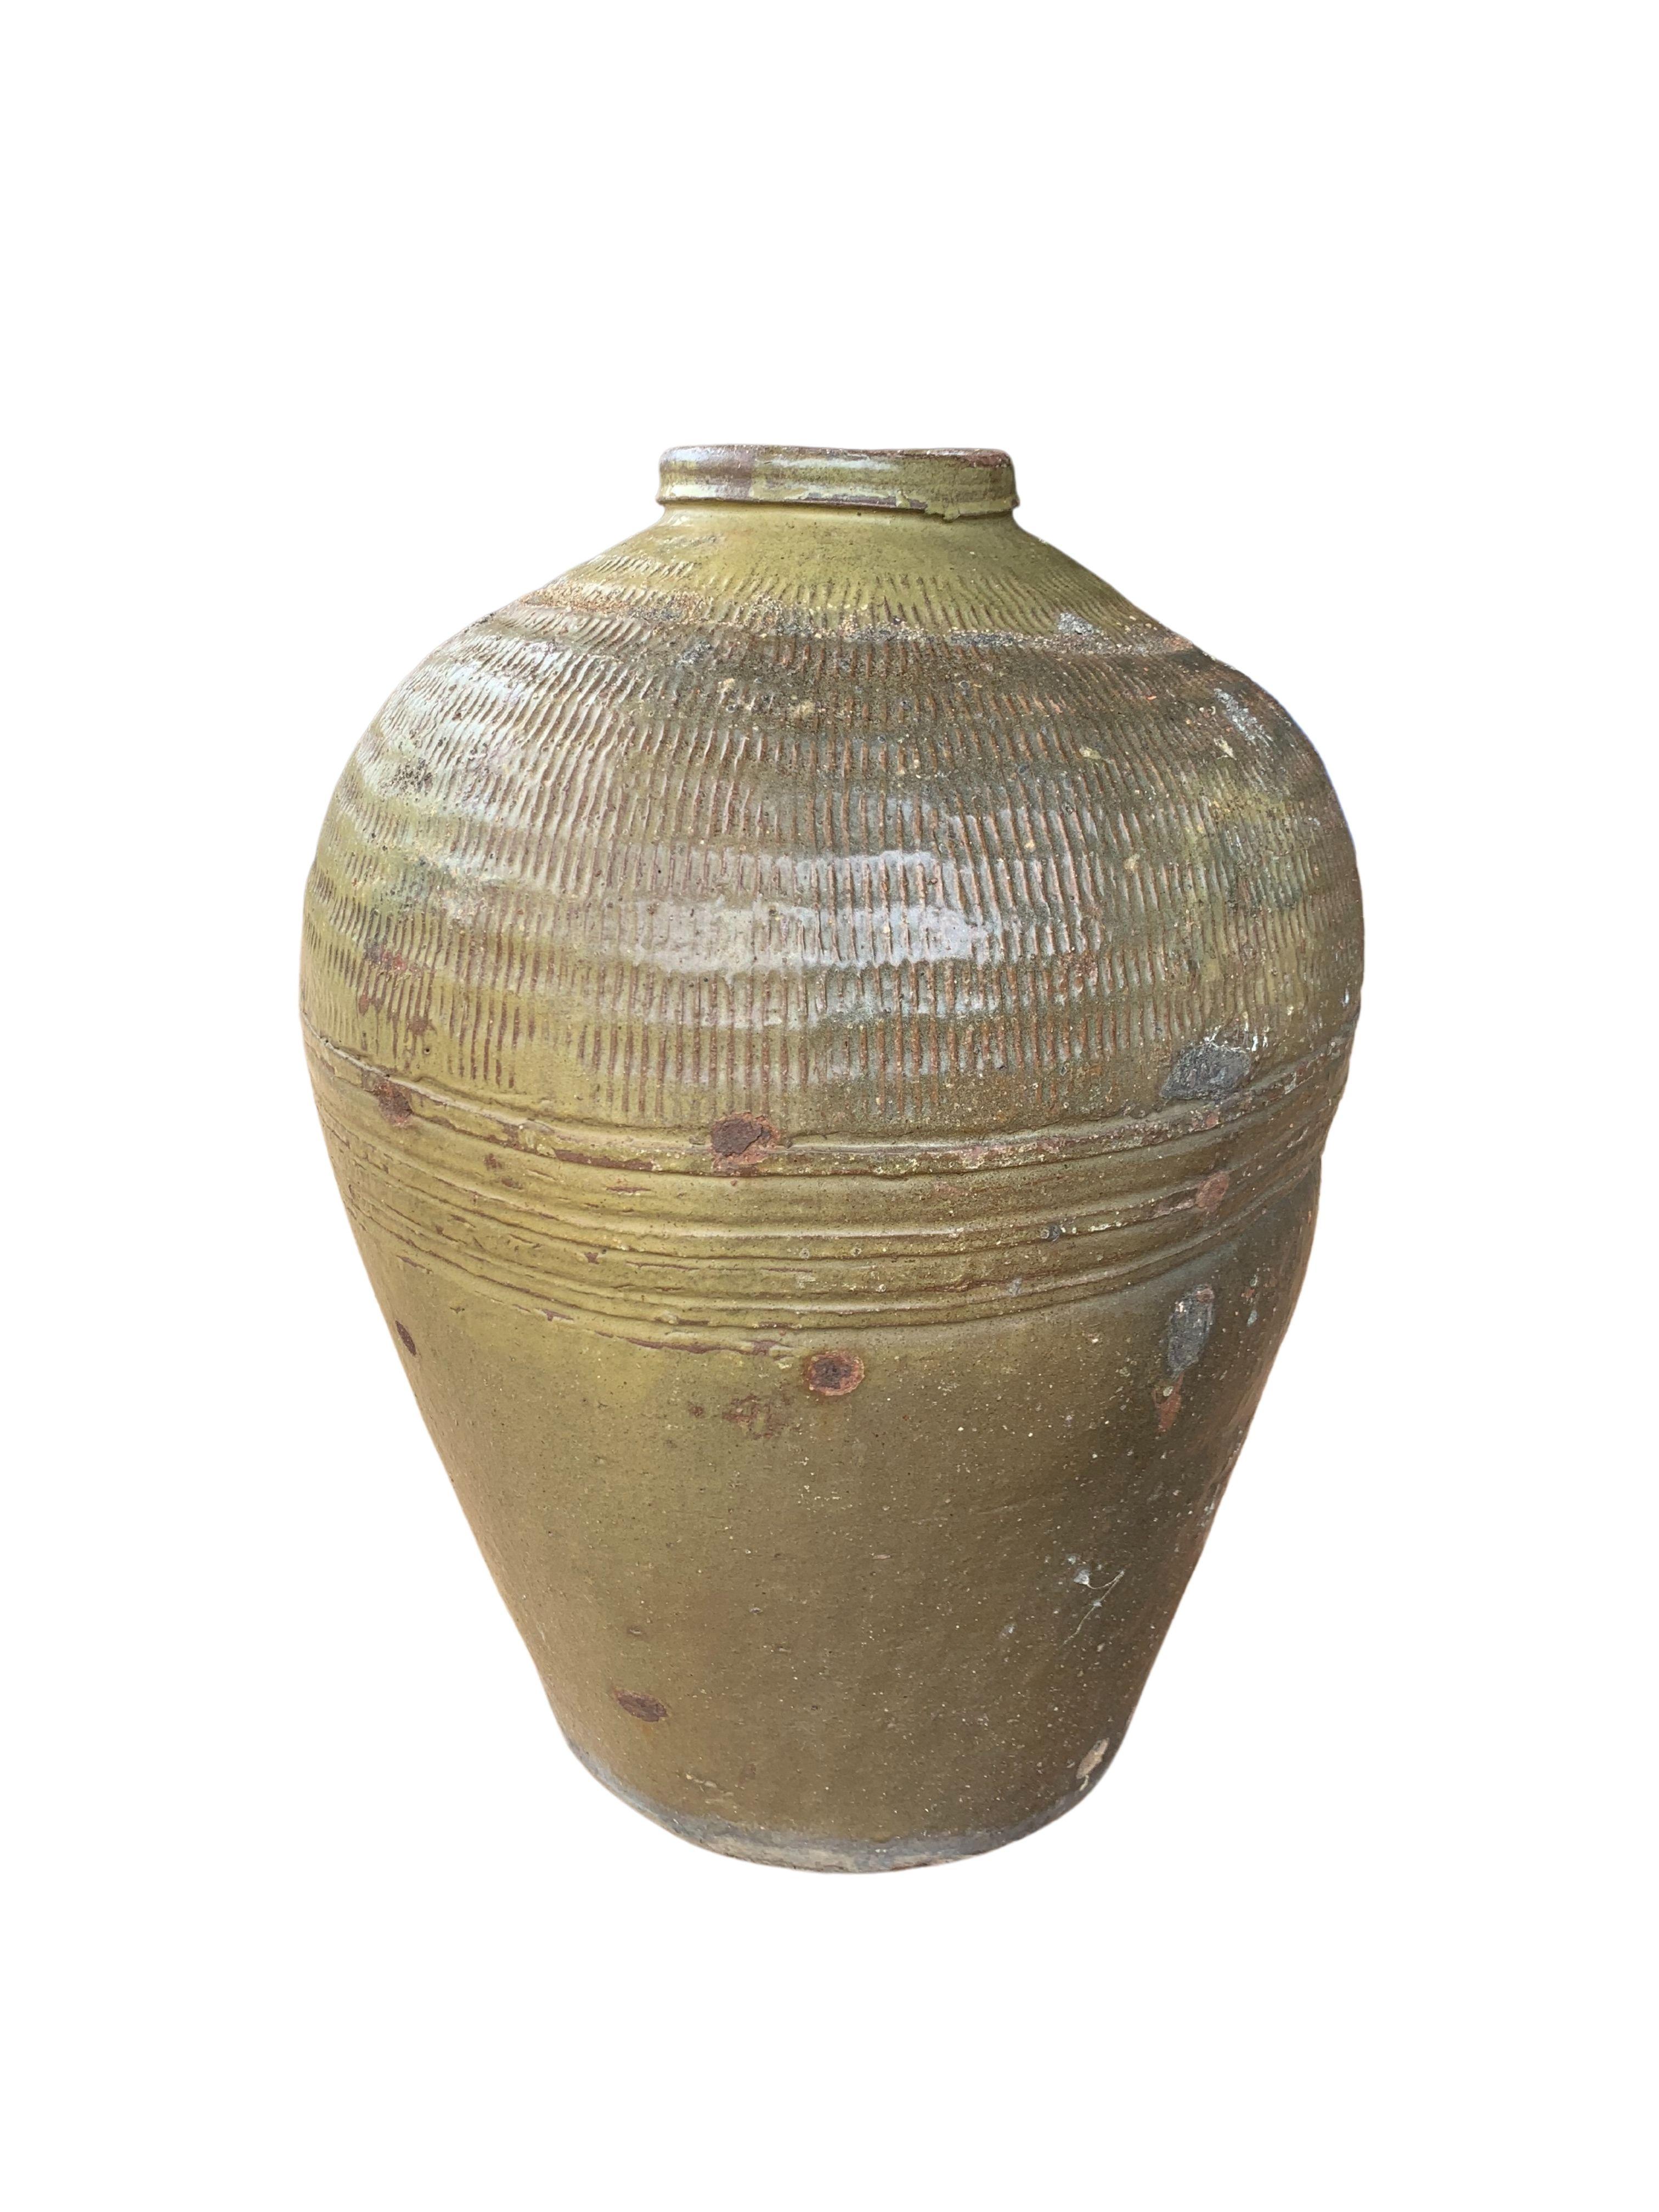 Qing Antique Chinese Ceramic Pickling Jar Jade Green, c. 1900